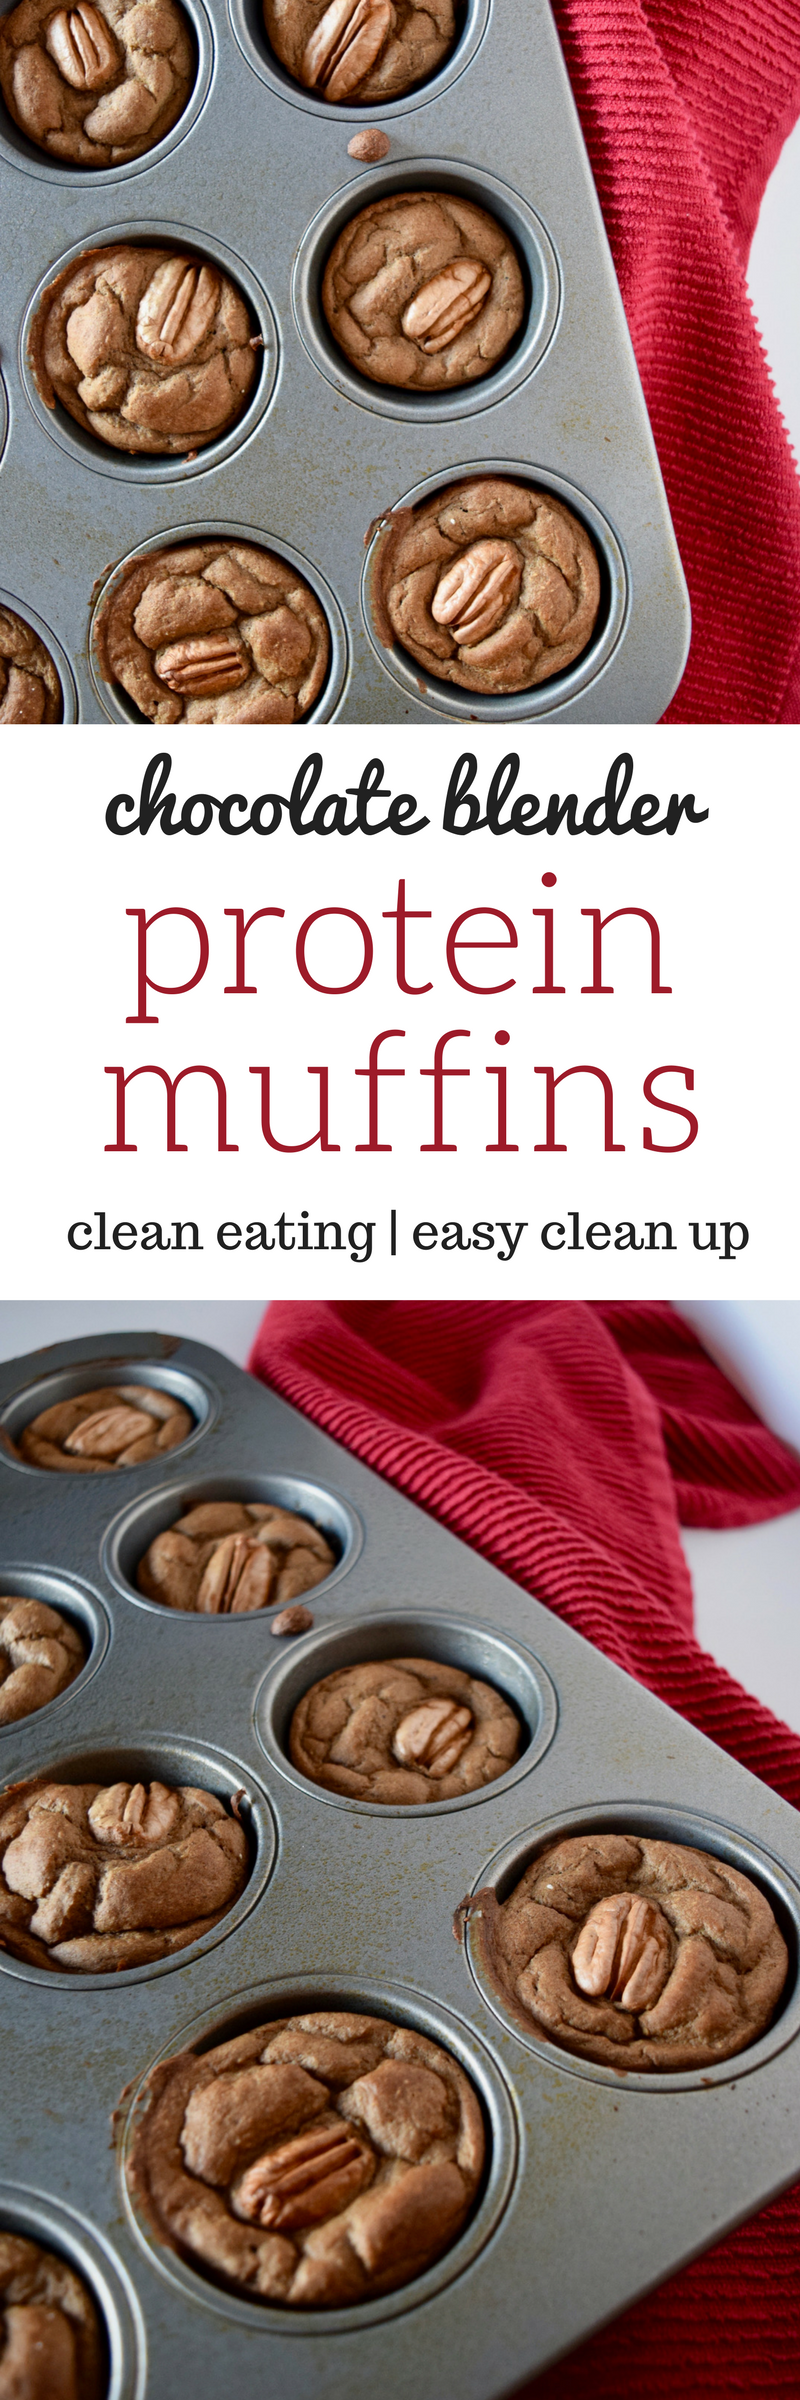 protein muffins | chocolate protein muffins | blender muffin recipe